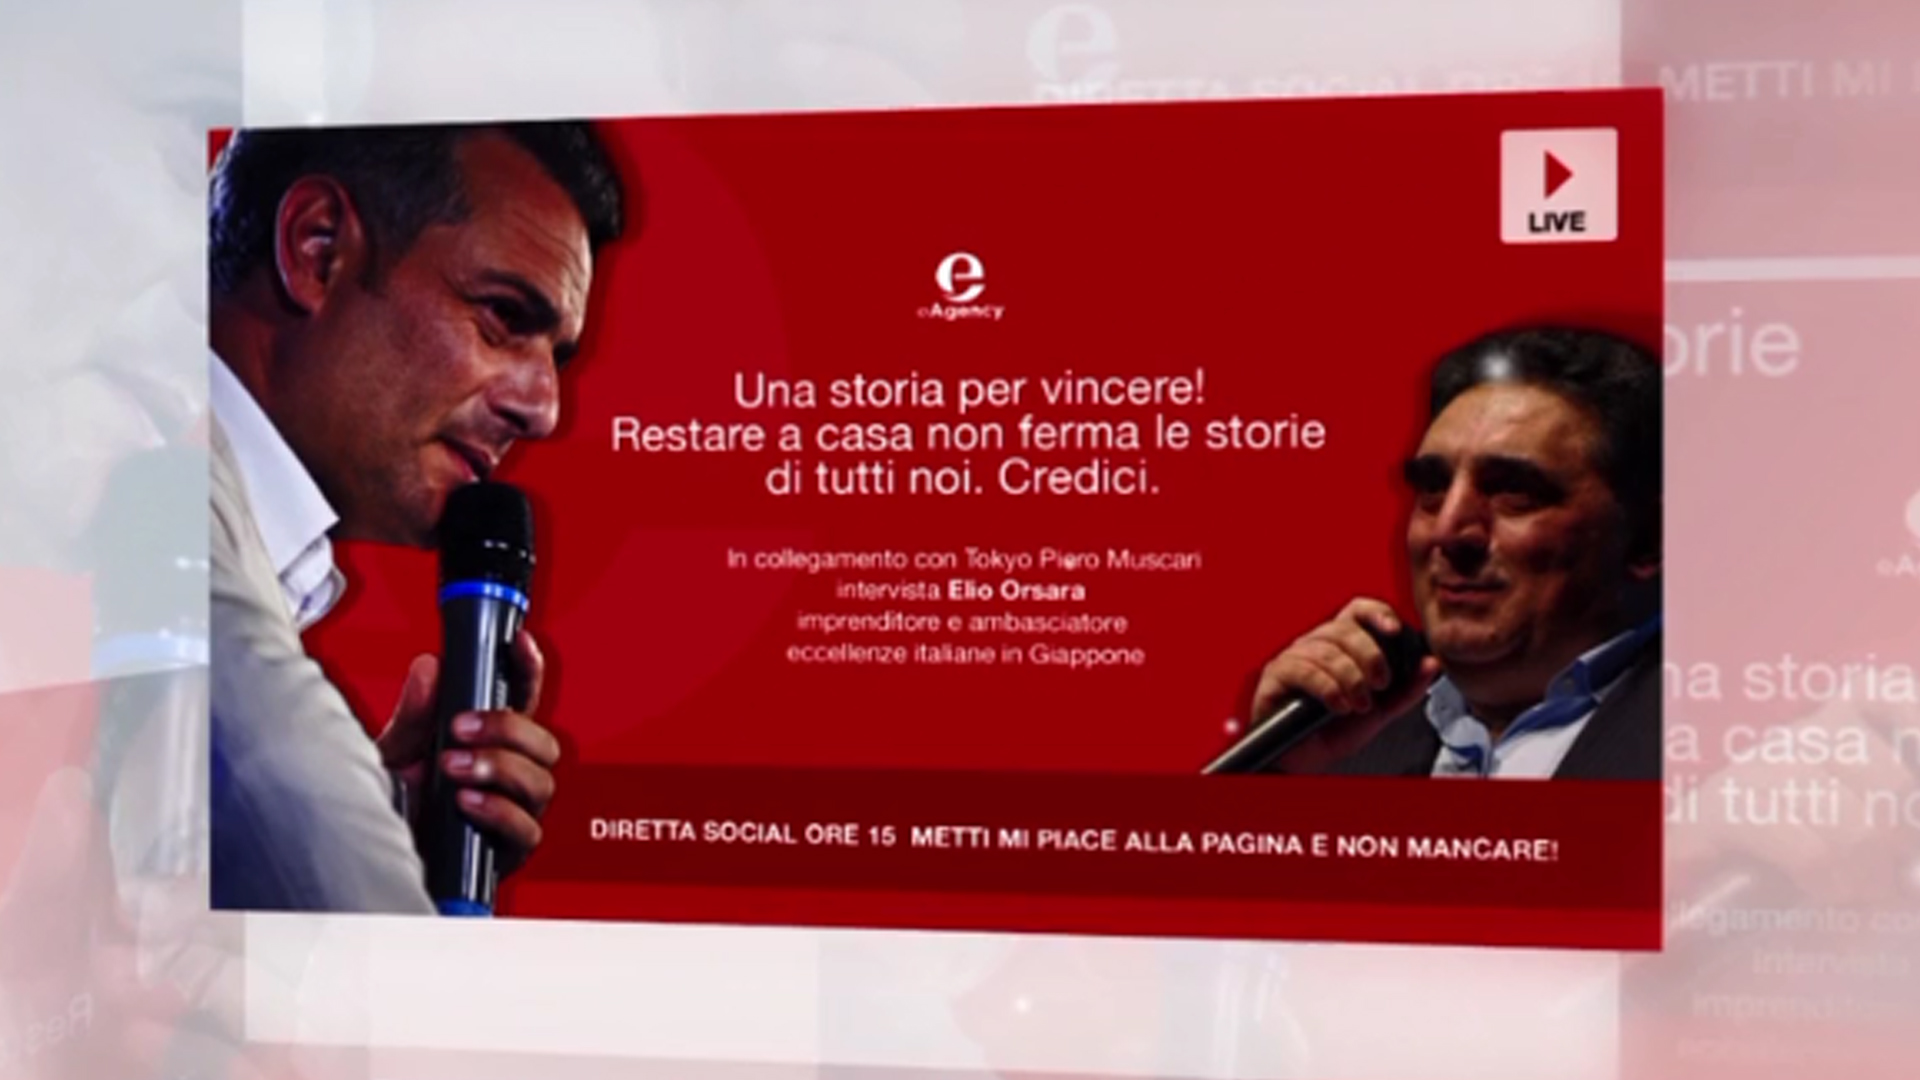 Elio Orsara e Piero Muscari: live del 23 marzo